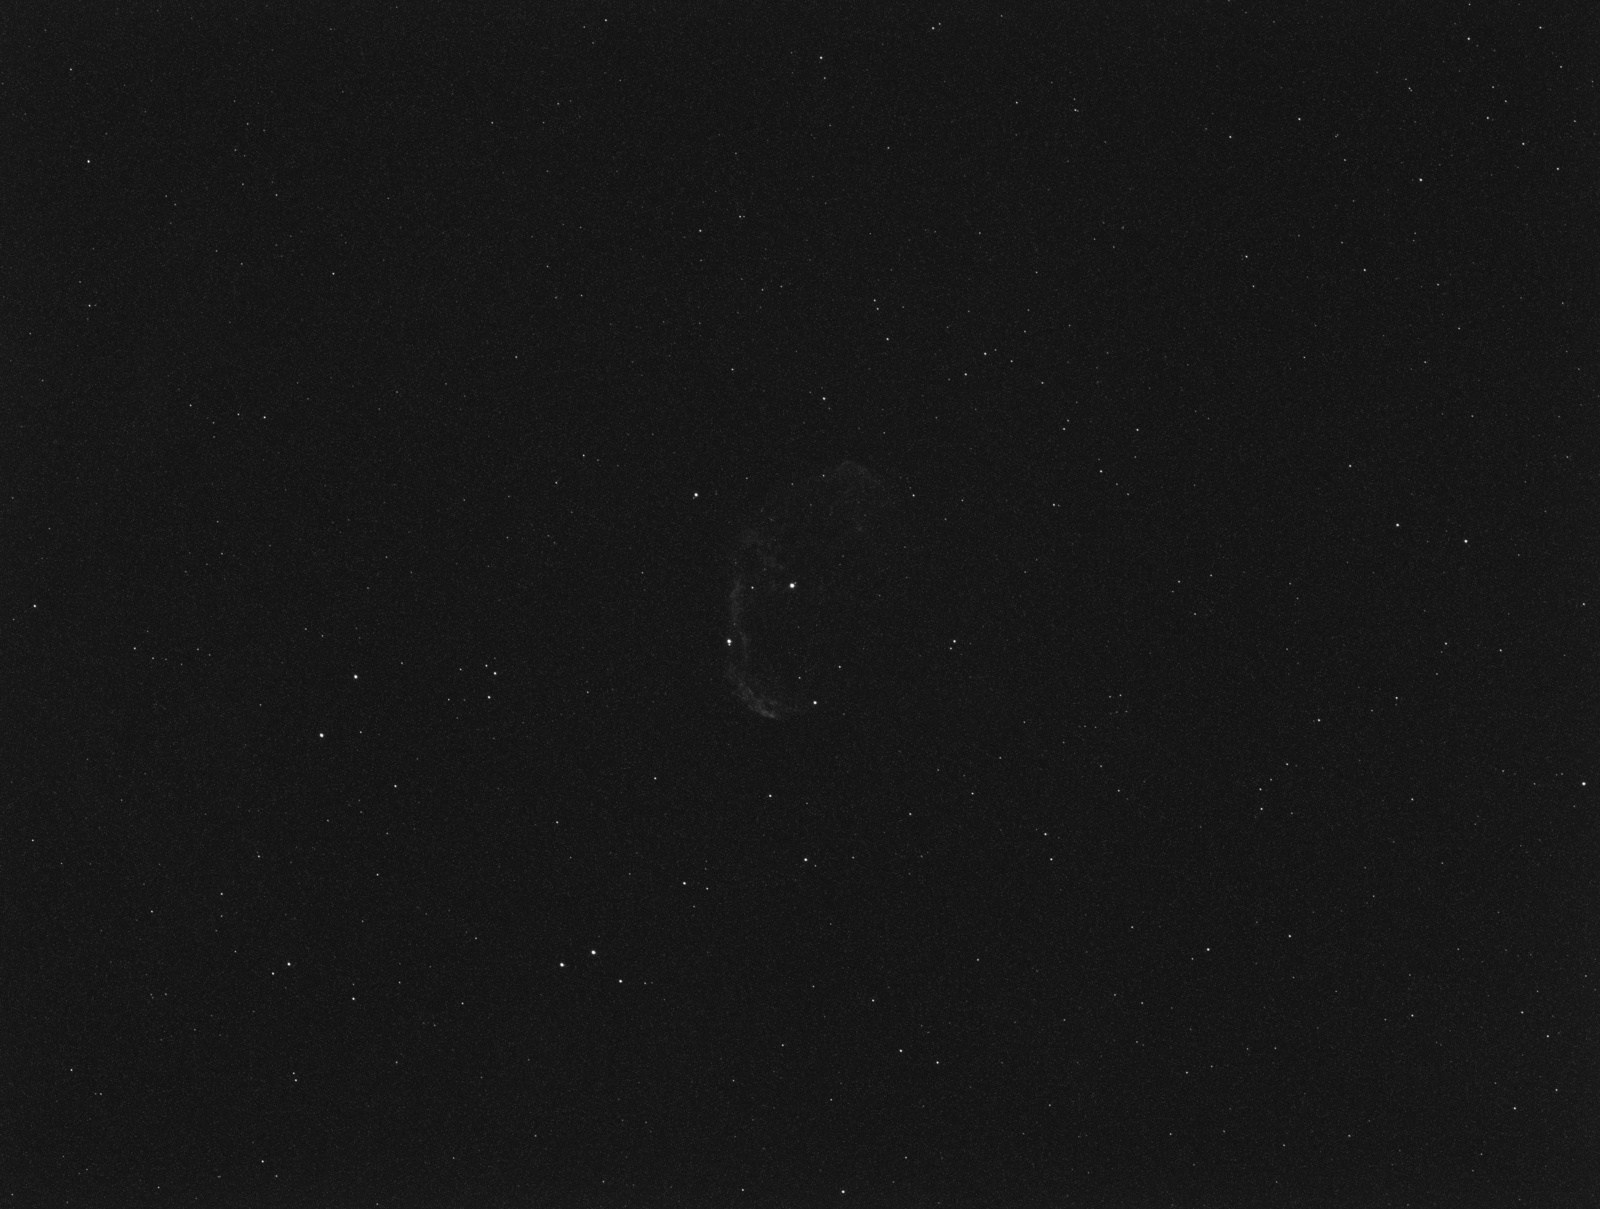 L_NGC6888_Ha_G139_2018-08-28_23-27-20_600s_2018-08-28_23-27-20.thumb.jpg.f8b5b51acb5fc272fef96e1ff8111a63.jpg